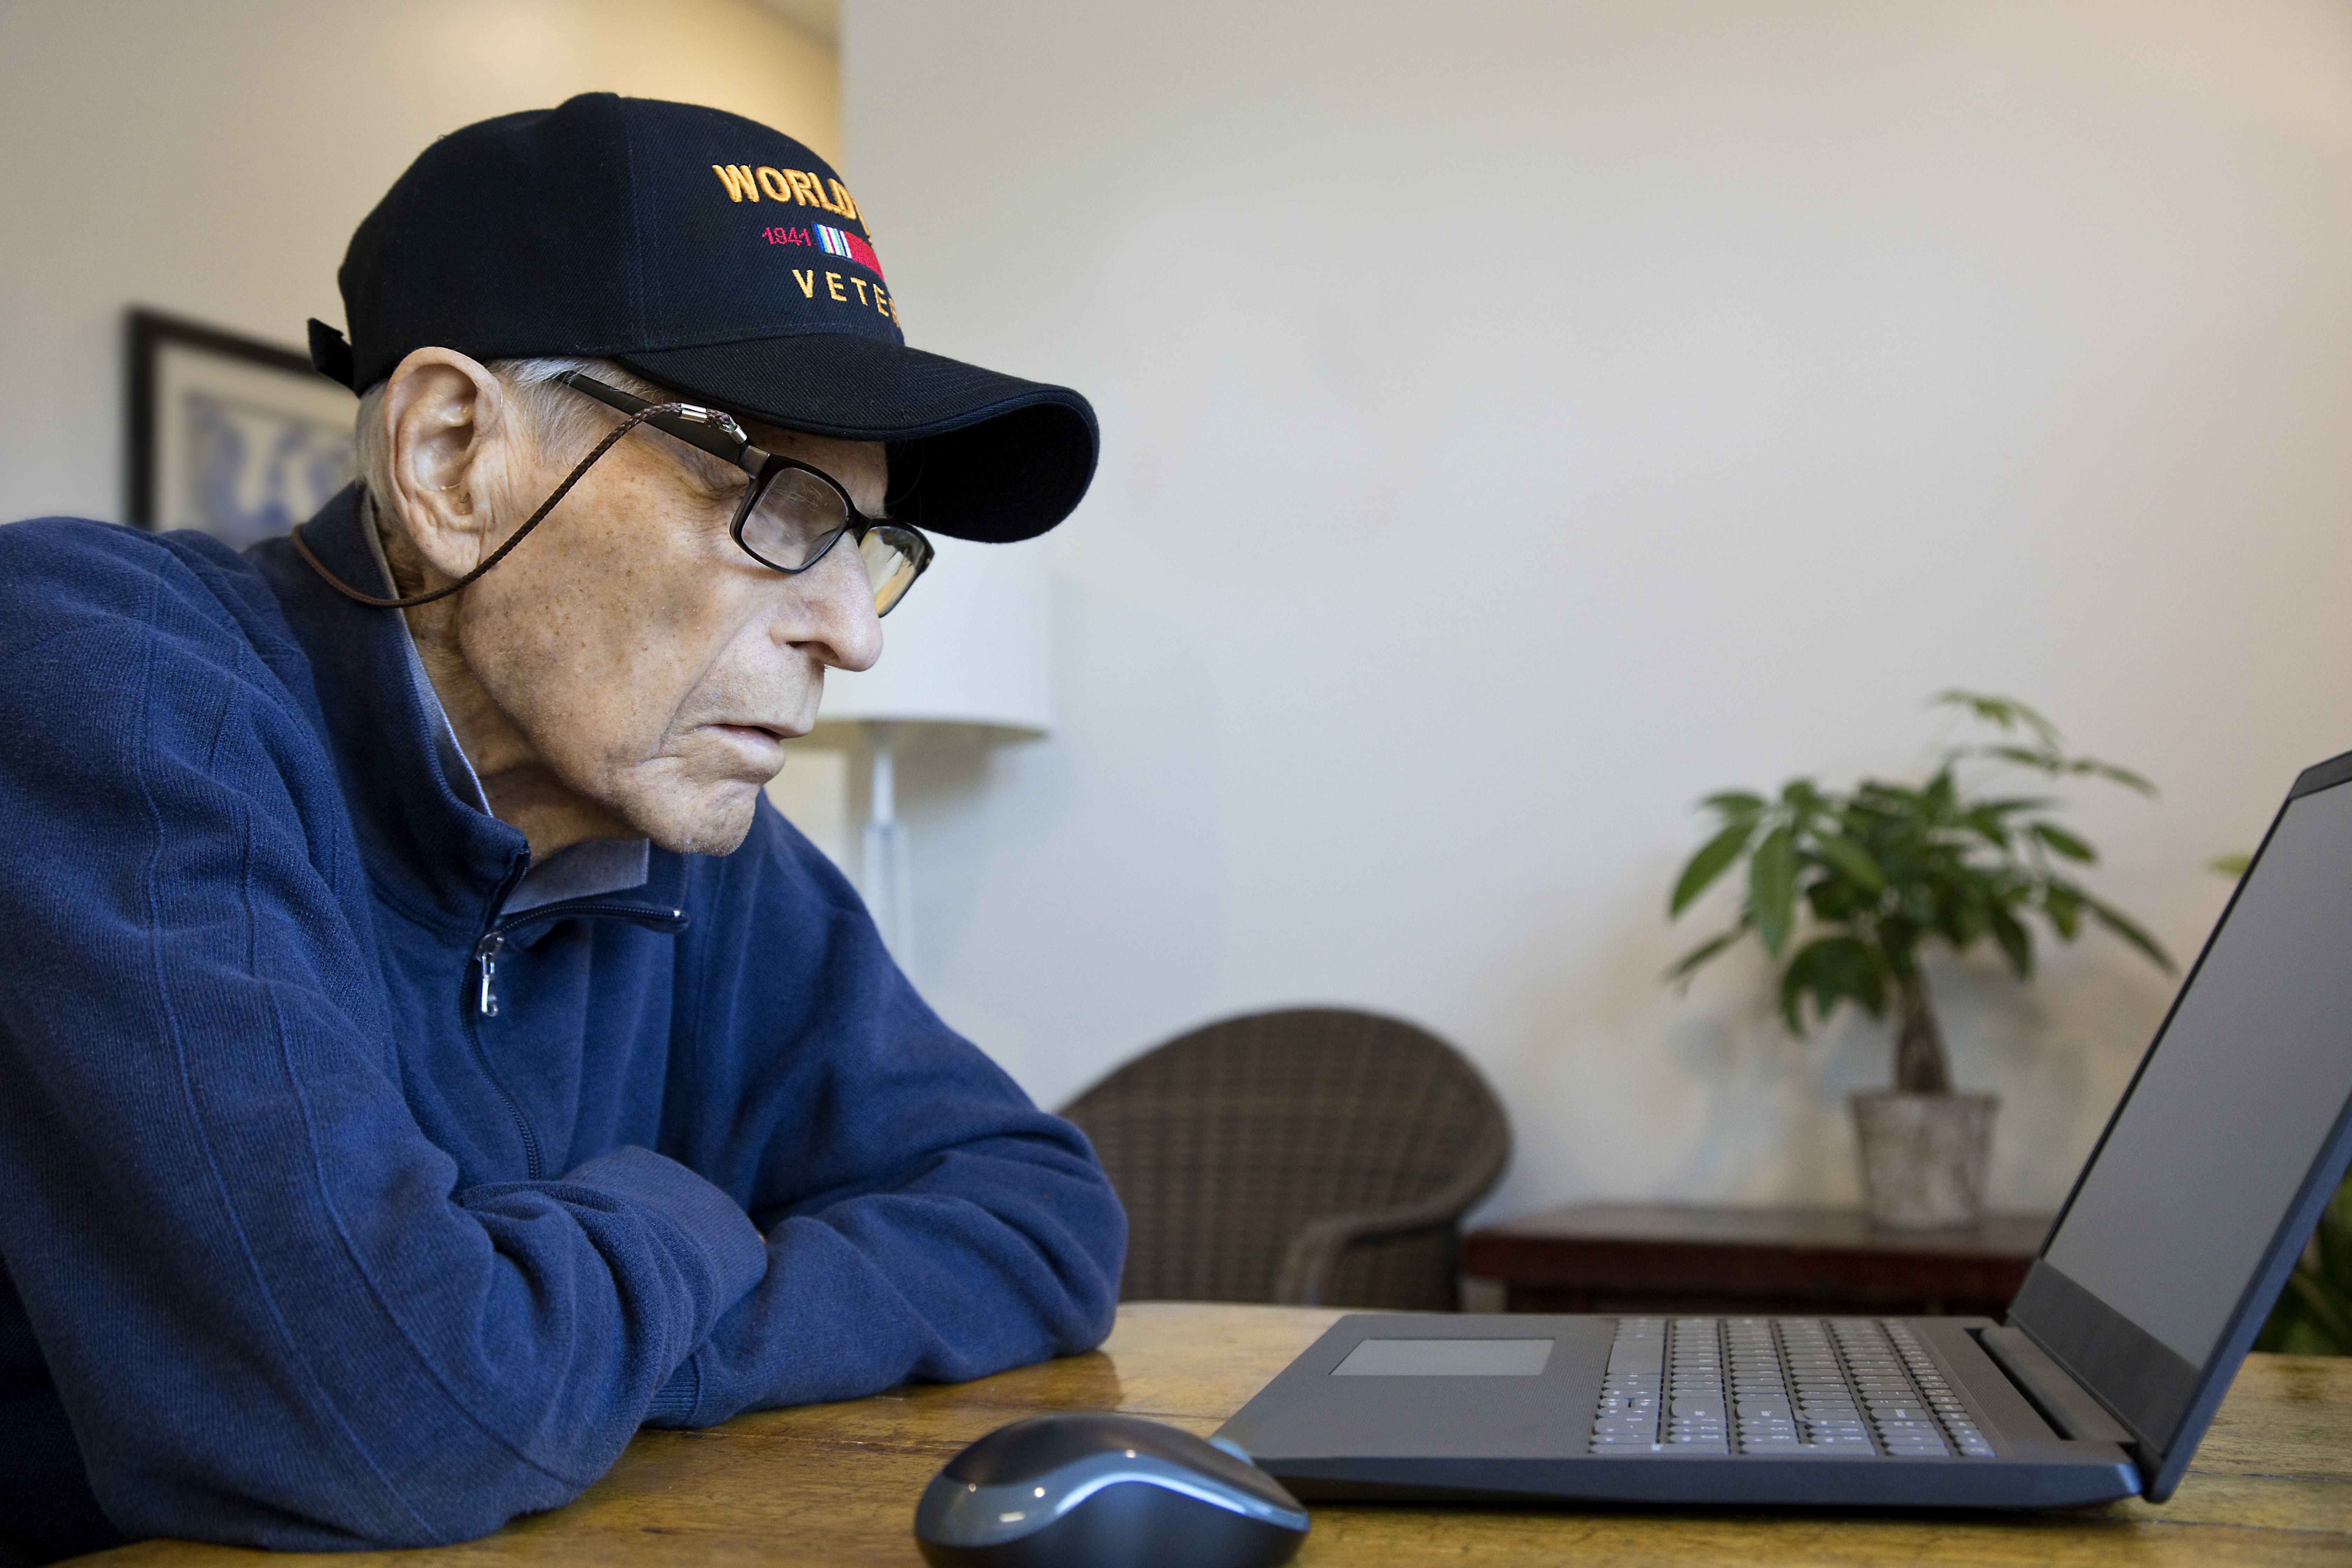 World War Two Veteran wearing cap at home looking at laptop